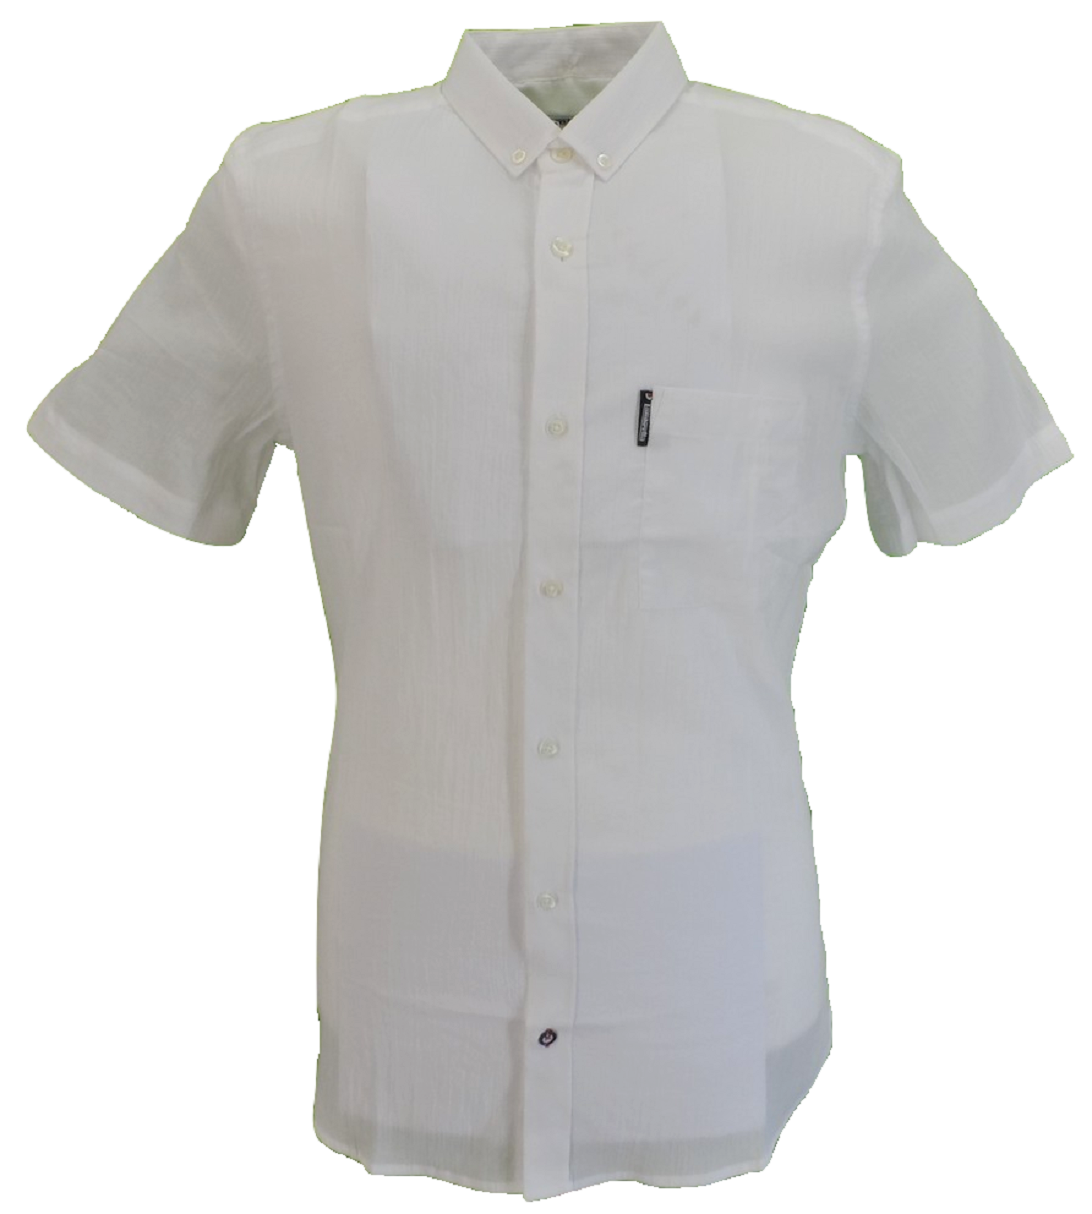 Lambretta White Retro Short Sleeved Shirt